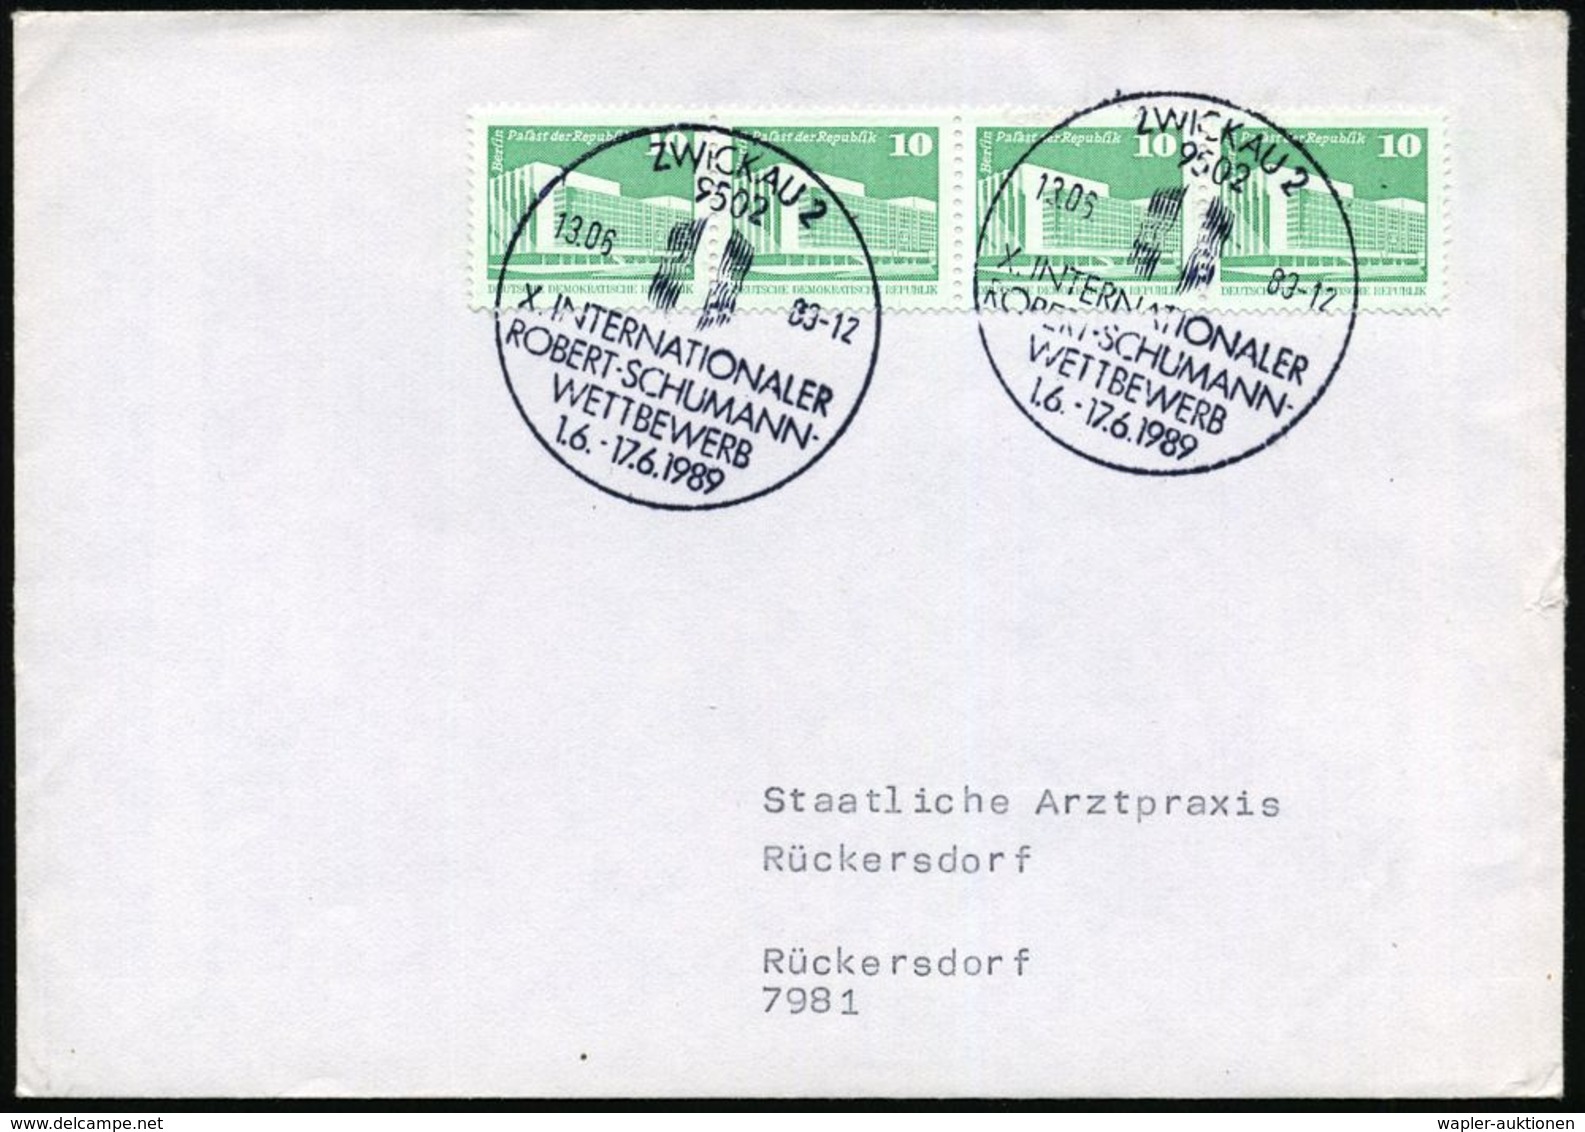 ROBERT SCHUMANN : 9502 ZWICKAU 2/ X.INTERNAT./ ROBERT-SCHUMANN-/ WETTBEWERB 1989 (13.6.) SSt (Logo) 2x Klar Auf Inl.-Bf. - Musica